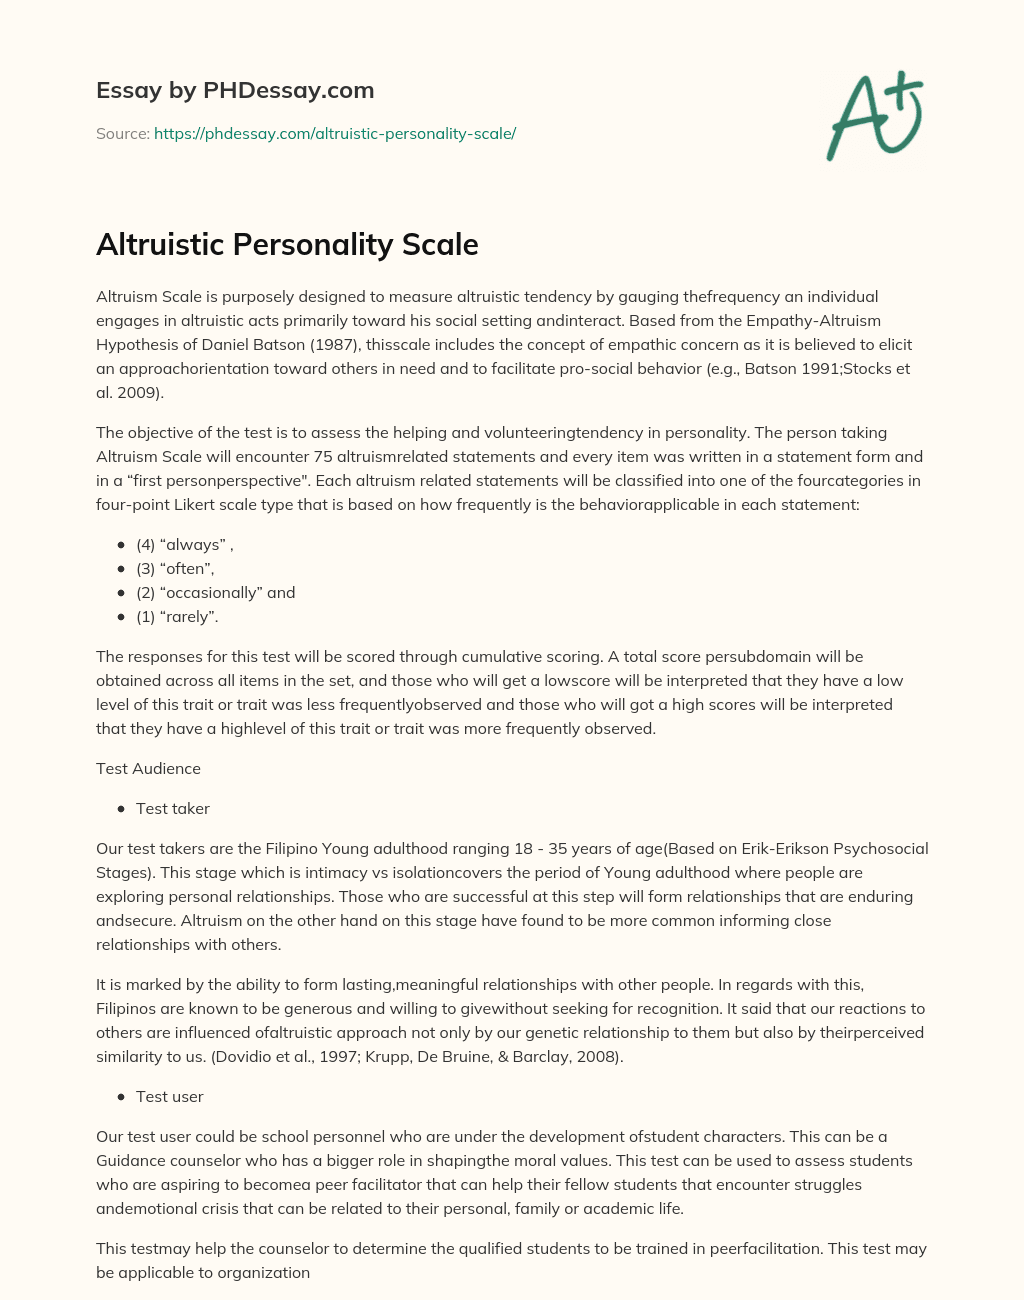 Altruistic Personality Scale essay